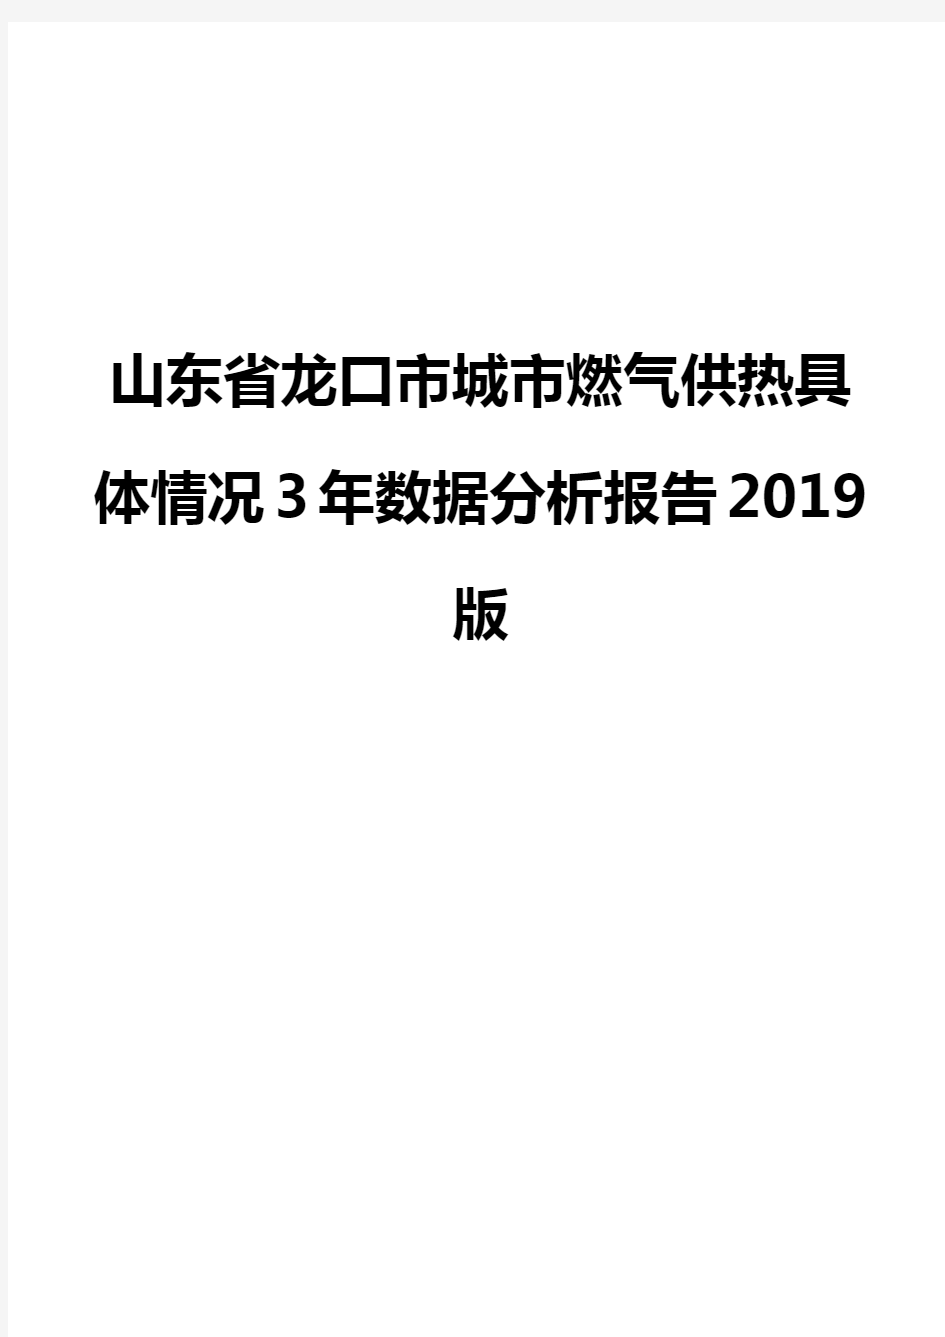 山东省龙口市城市燃气供热具体情况3年数据分析报告2019版